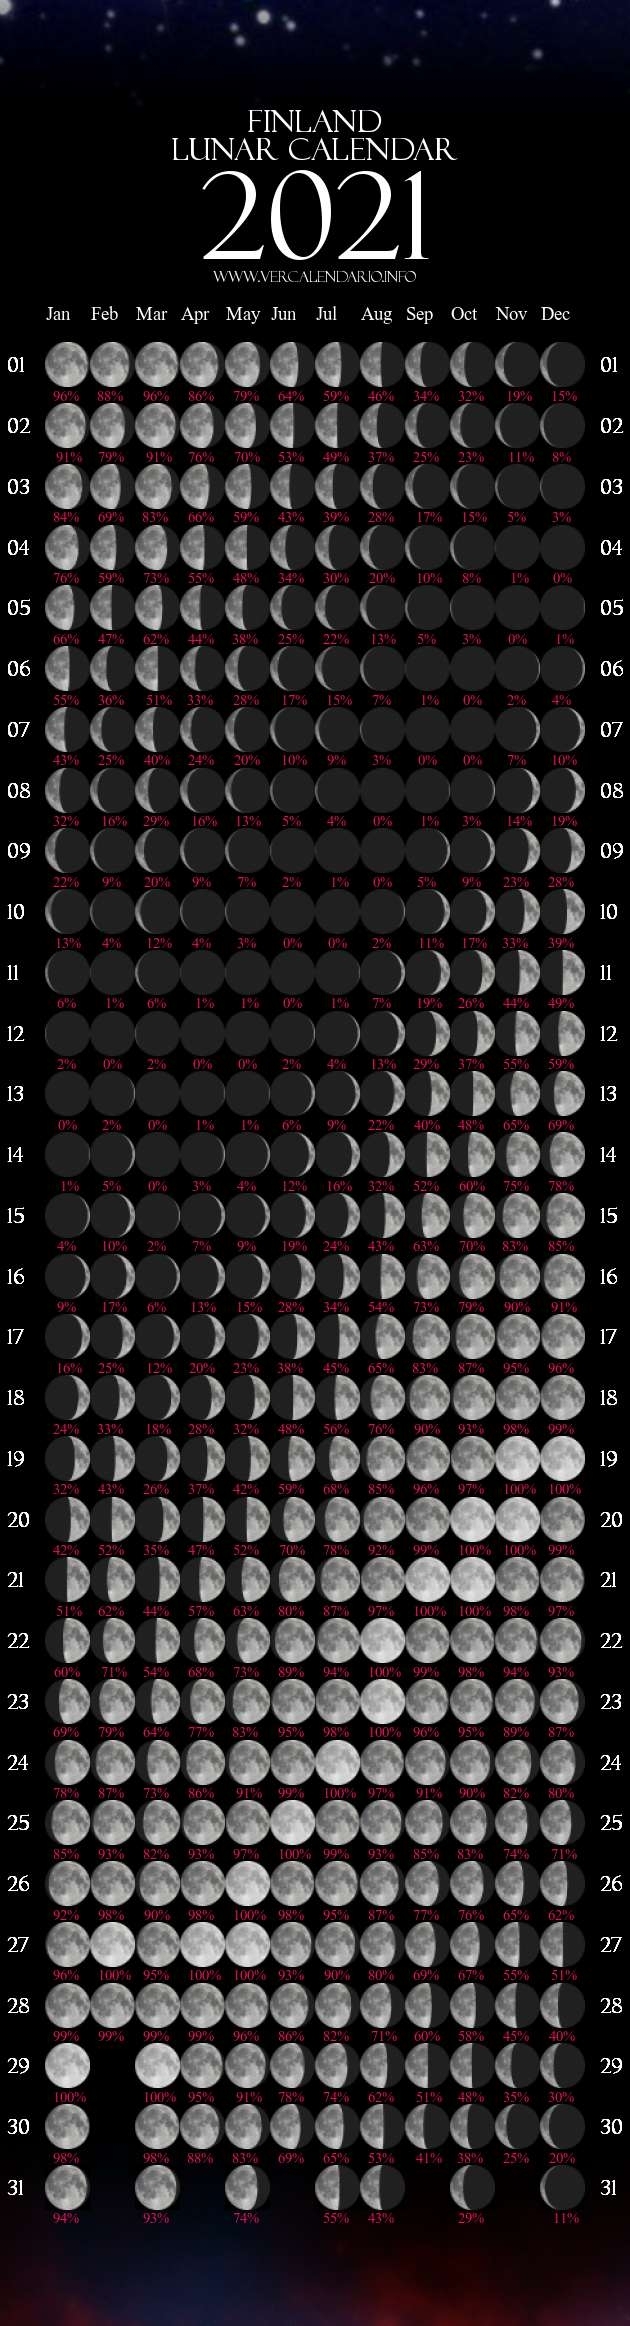 Lunar Calendar 2021 (Finland)